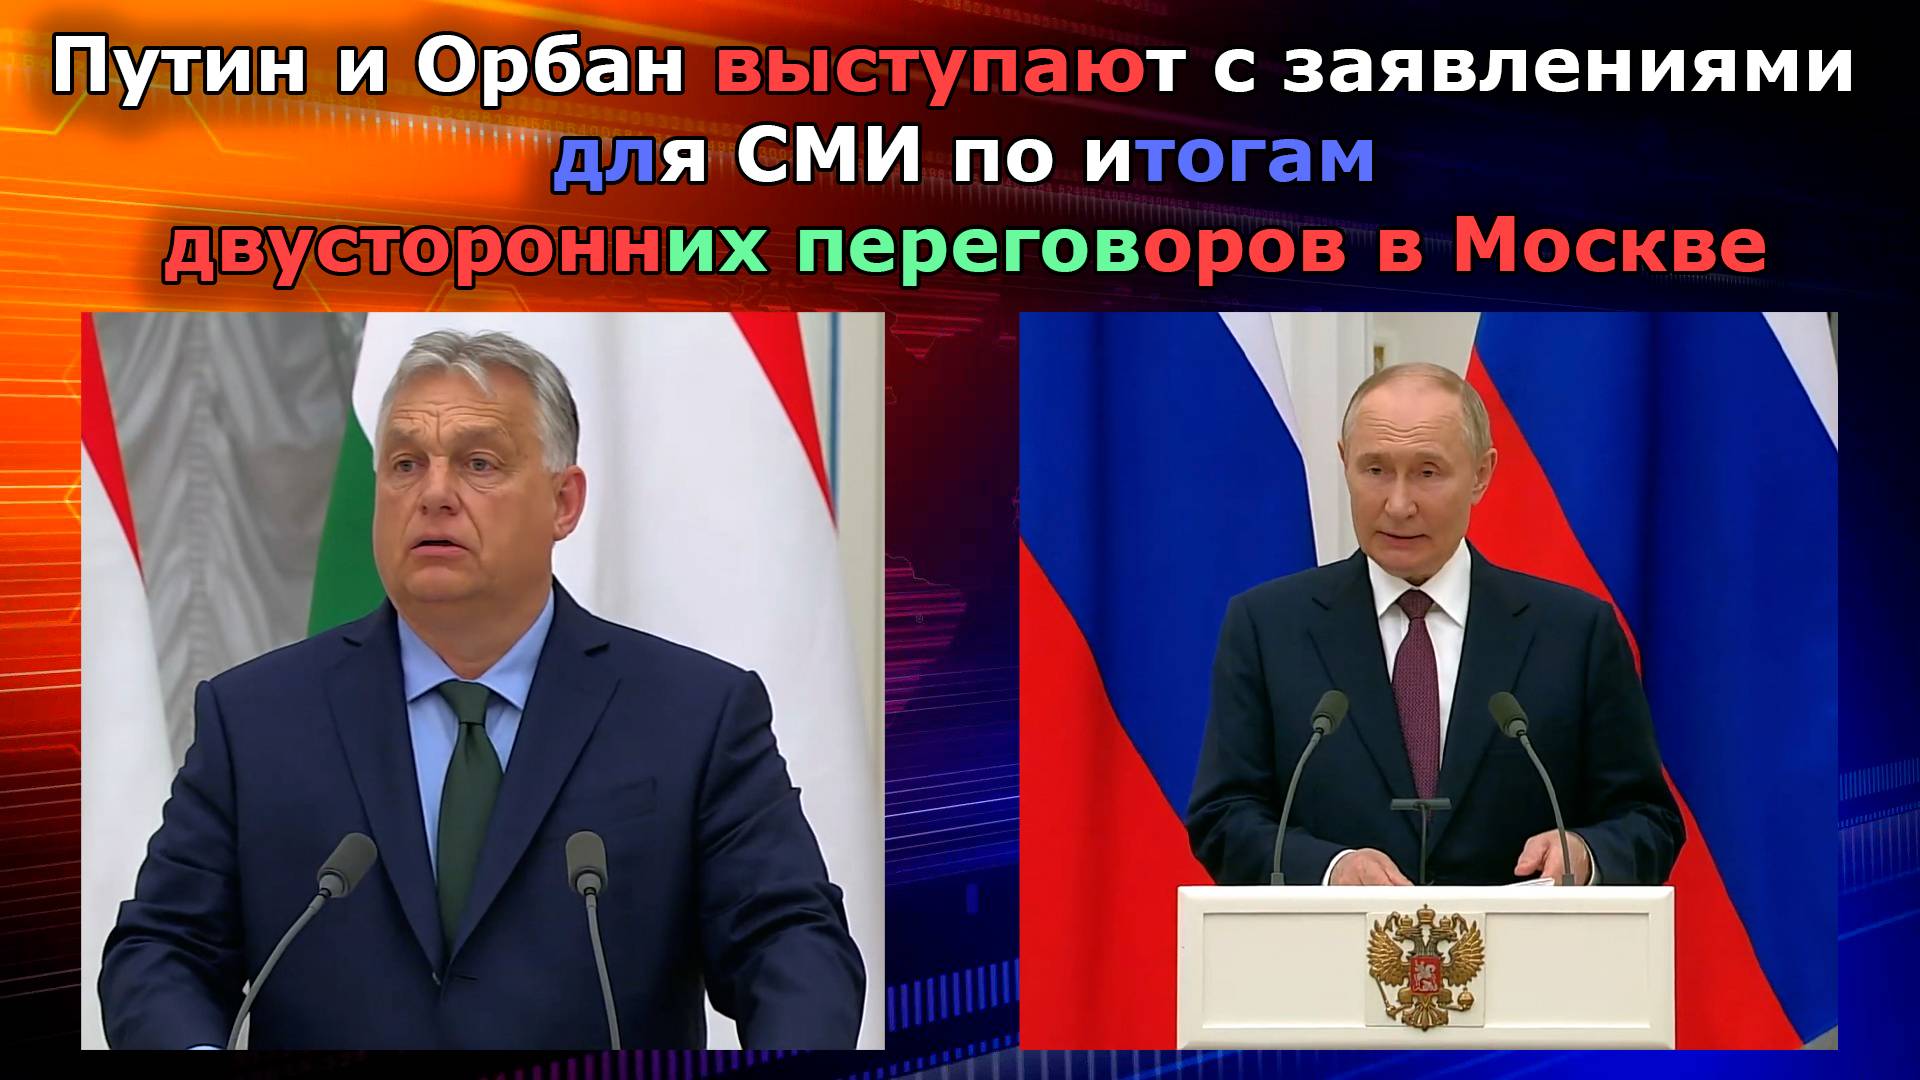 Путин и Орбан выступают с заявлениями для СМИ по итогам двусторонних переговоров в Москве